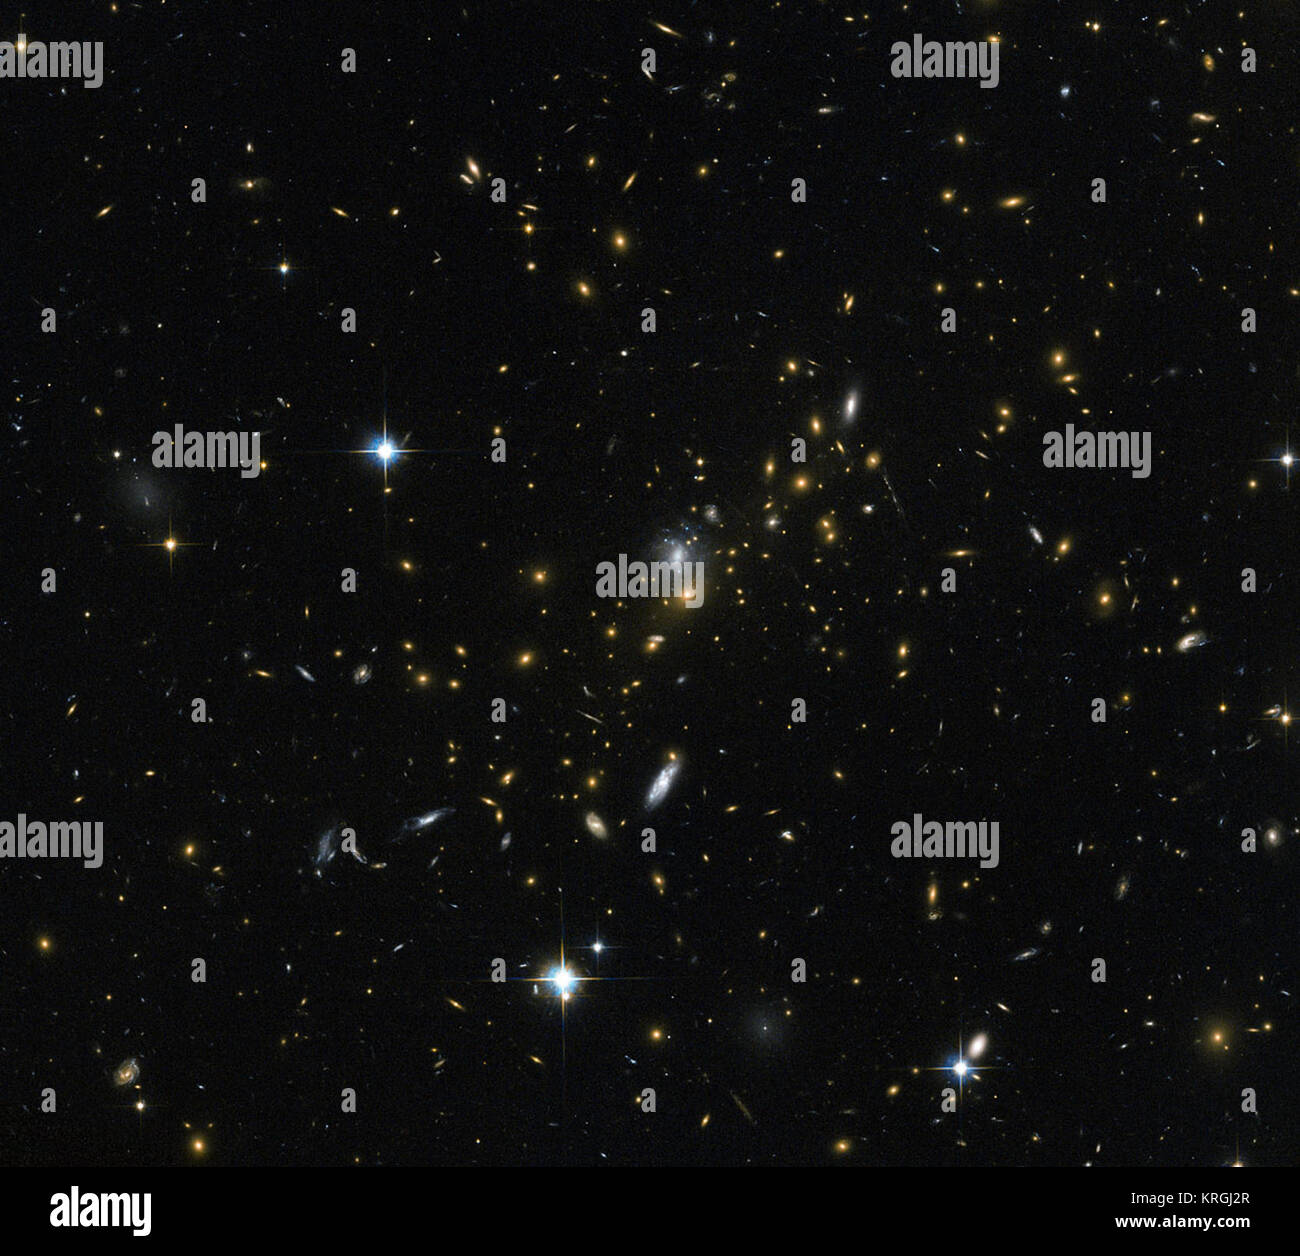 Los cúmulos de galaxias son algunas de las estructuras más masivas que se pueden encontrar en el universo - grandes grupos de galaxias ligadas por la gravedad. Esta imagen de la NASA/ESA Hubble Space Telescope revela uno de estos grupos, conocido como MACS J0454.1-0300. Cada una de las manchas brillantes visto aquí es una galaxia, y cada uno de ellos es el hogar de muchos millones o incluso miles de millones de estrellas. Los astrónomos han determinado la masa de MACS J0454.1-0300 será de alrededor de 180 billones de veces la masa del Sol. Grupos como este son tan masivo que su gravedad puede incluso cambiar el comportamiento del espacio alrededor de ellos, doblando la ruta o Foto de stock